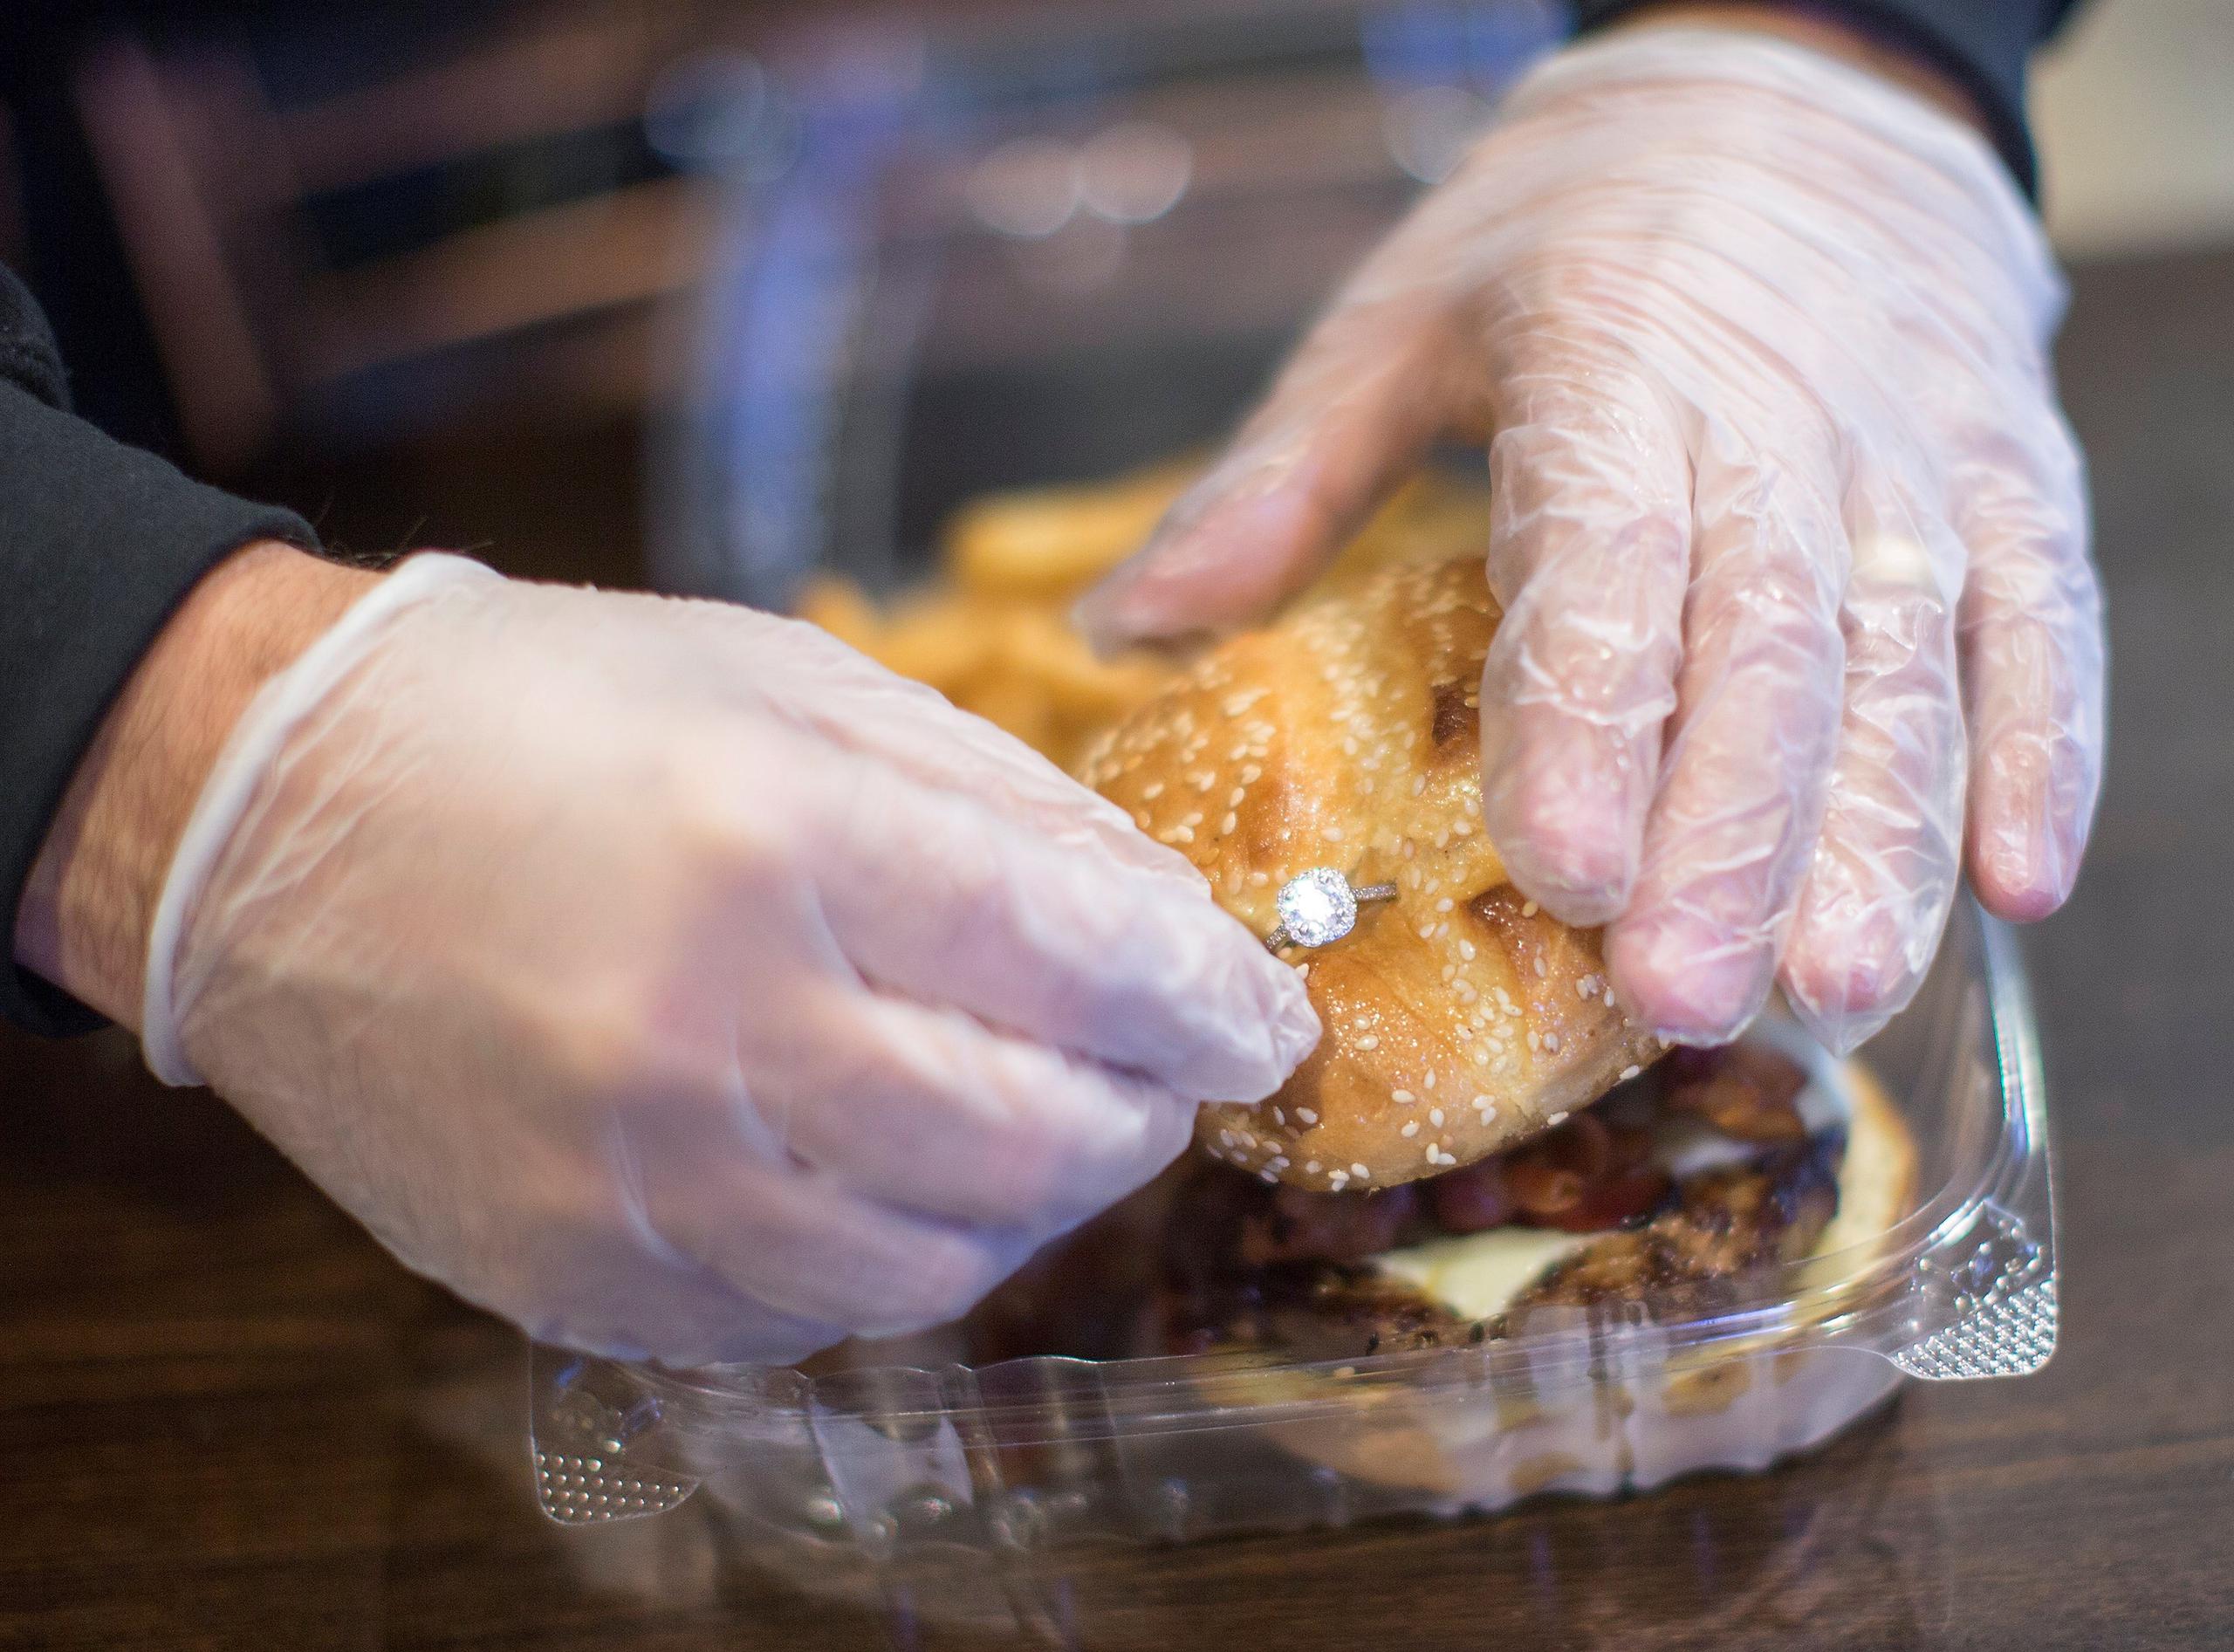 Con motivo de la celebración de San Valentín, los clientes podrán comprar la hamburguesa con un anillo de compromiso en el pan. (EFE / Cj Gunther)